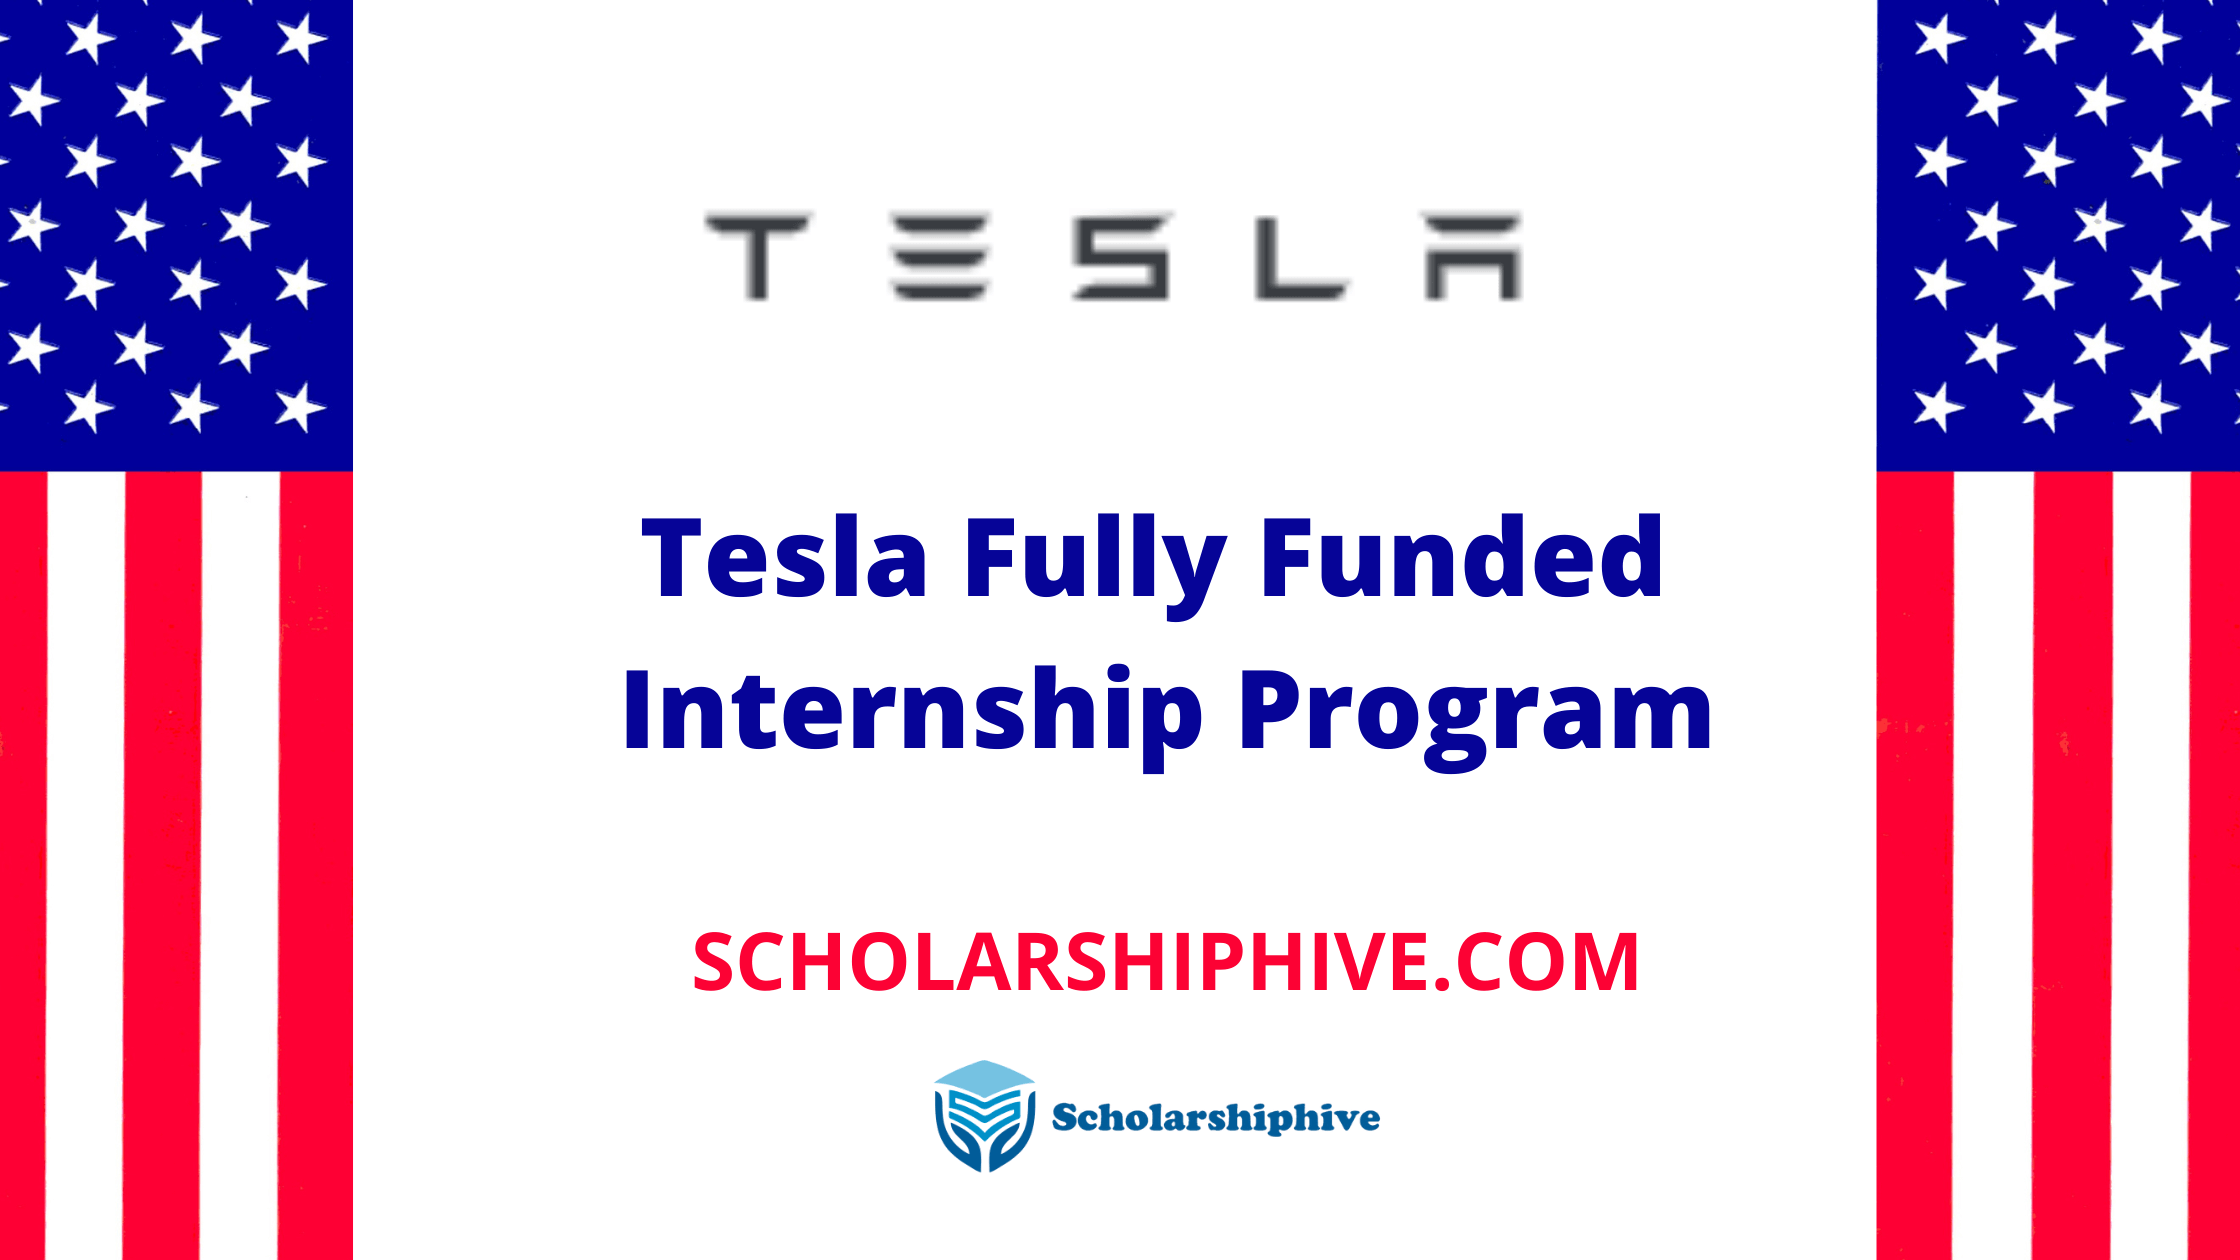 Tesla Fully Funded Internship Program Scholarshiphive